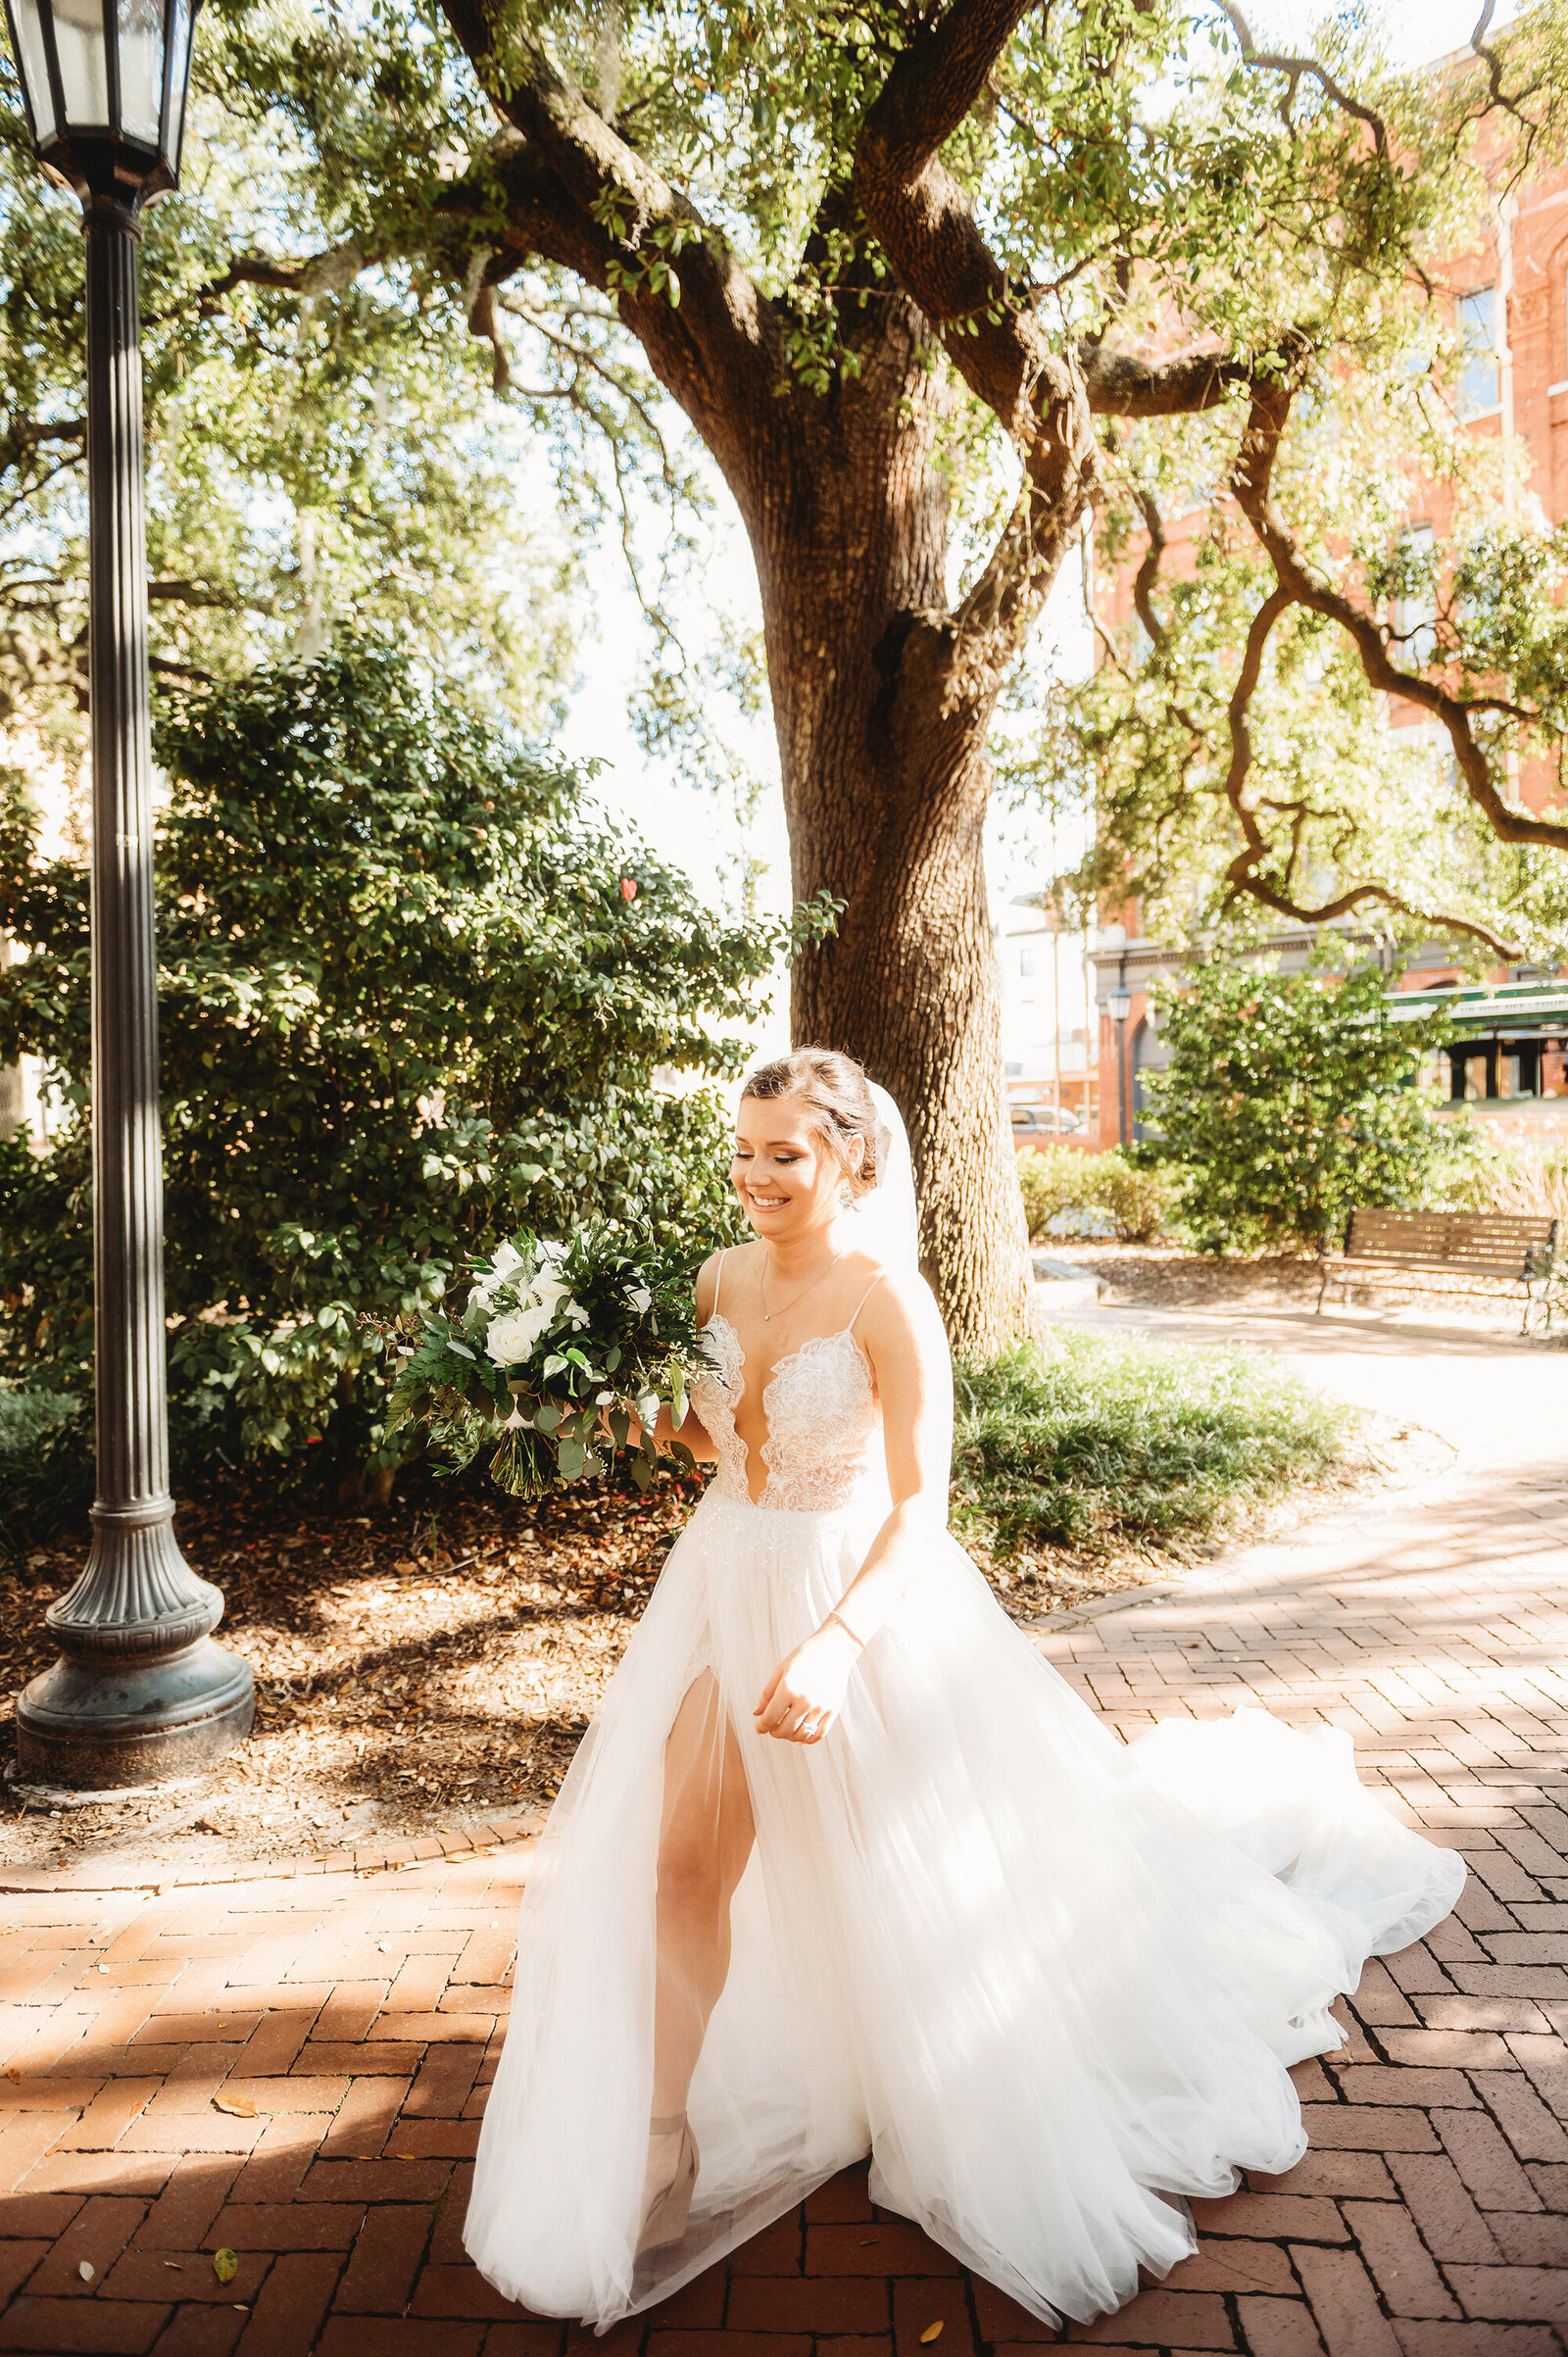 Bride walks to first look with her groom in Savannah, Ga.